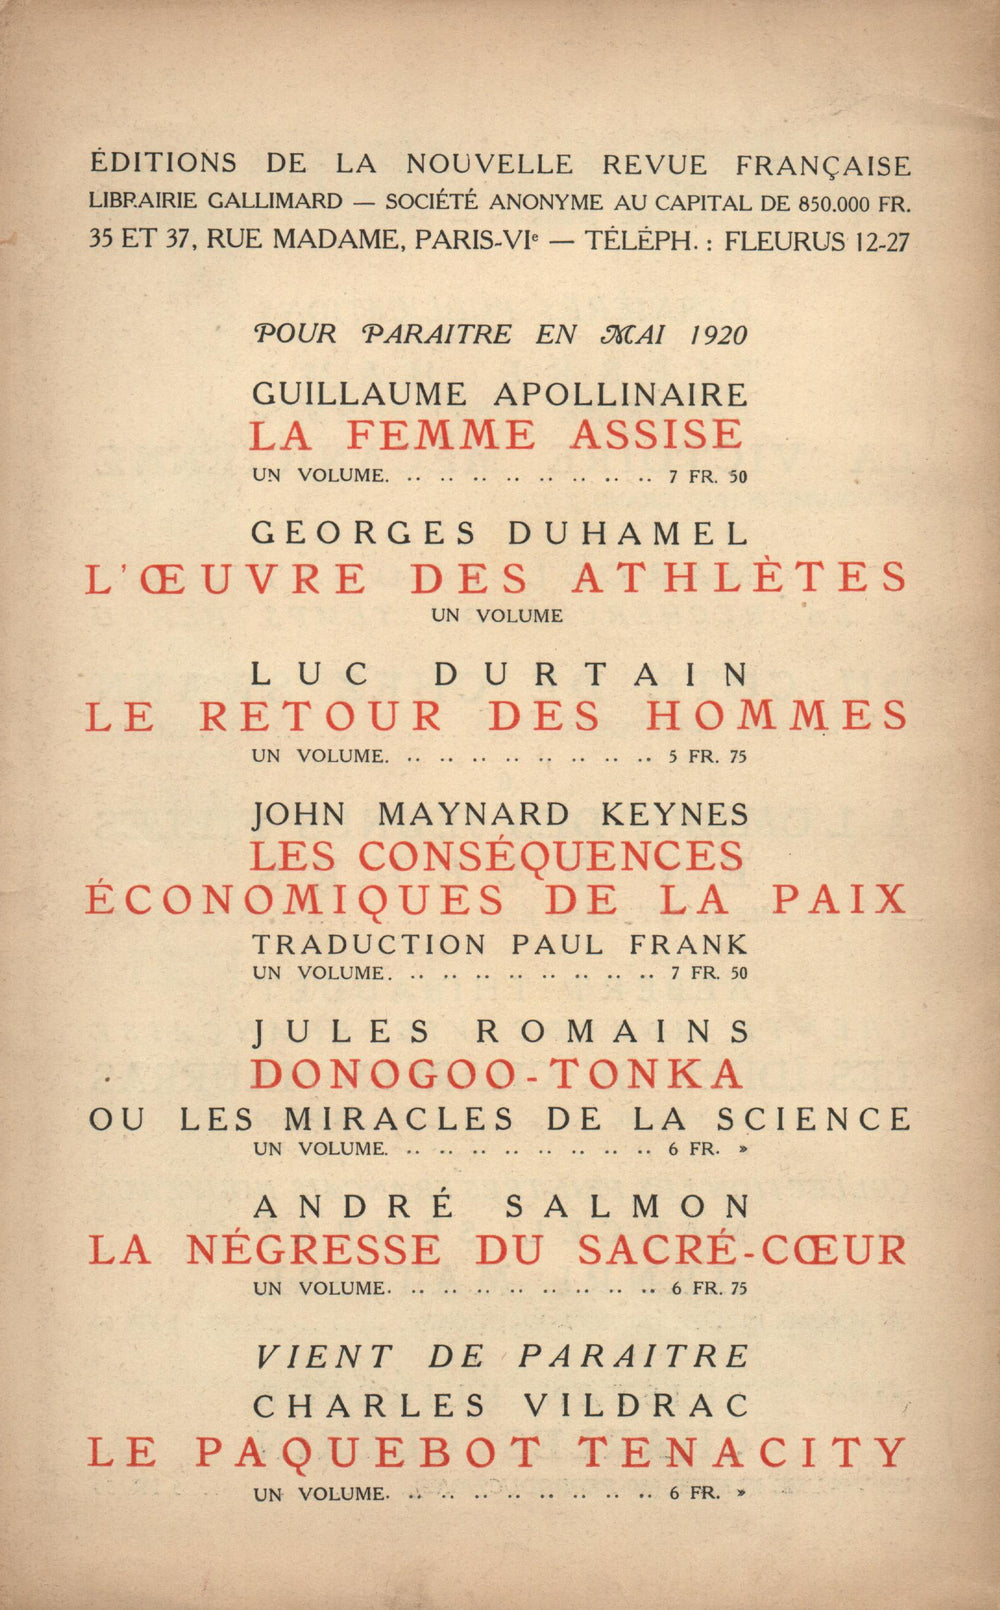 La Nouvelle Revue Française N' 80 (Mai 1920)